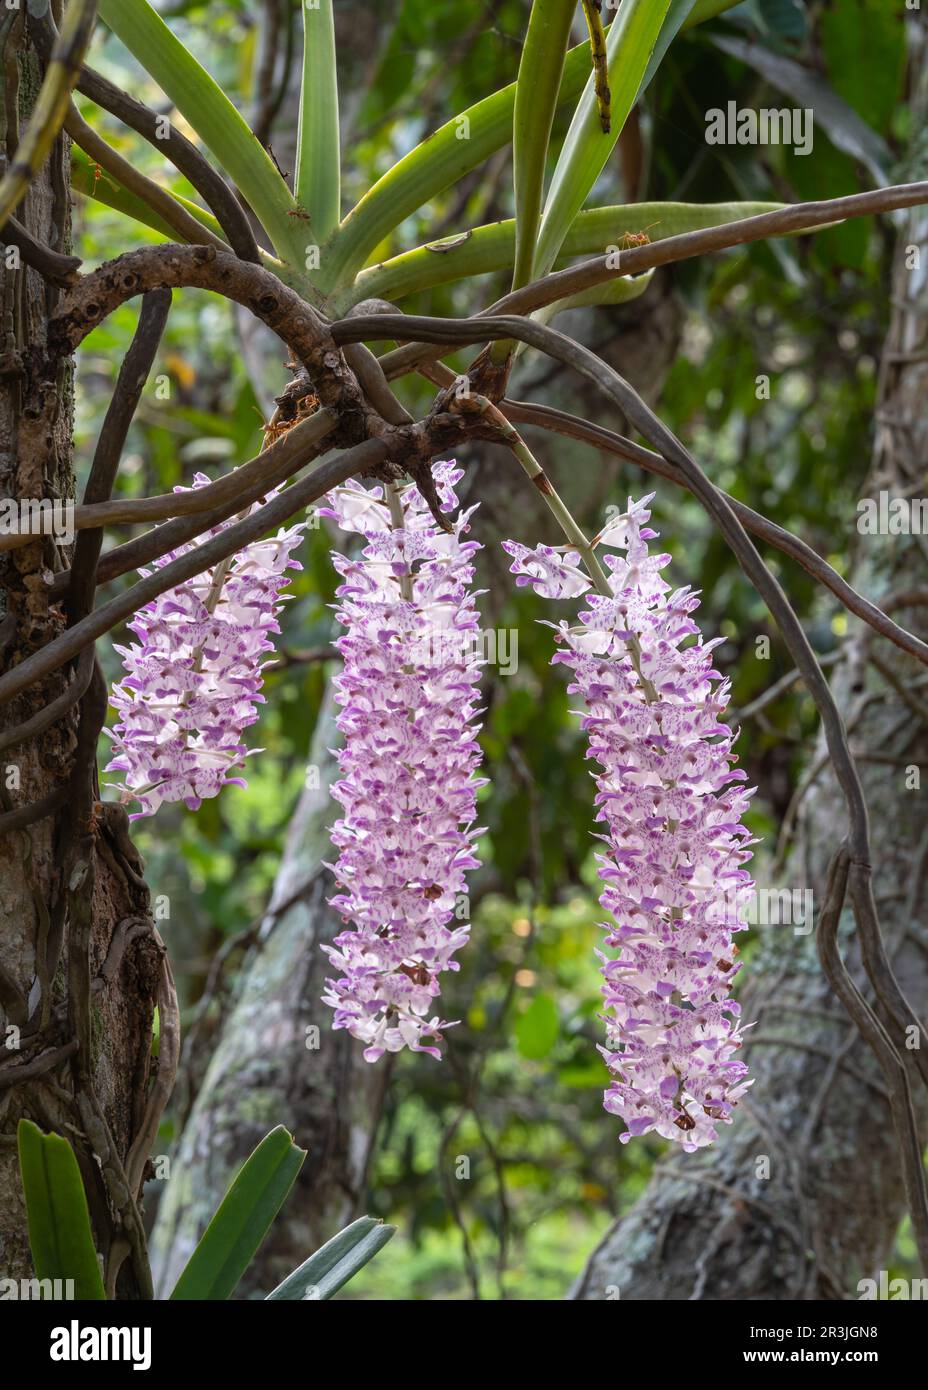 Vue rapprochée des grappes de fleurs blanches et violettes rétroéclairées de l'espèce d'orchidée rhynchostylis retusa épiphytique qui fleurit à l'extérieur dans le jardin tropical Banque D'Images